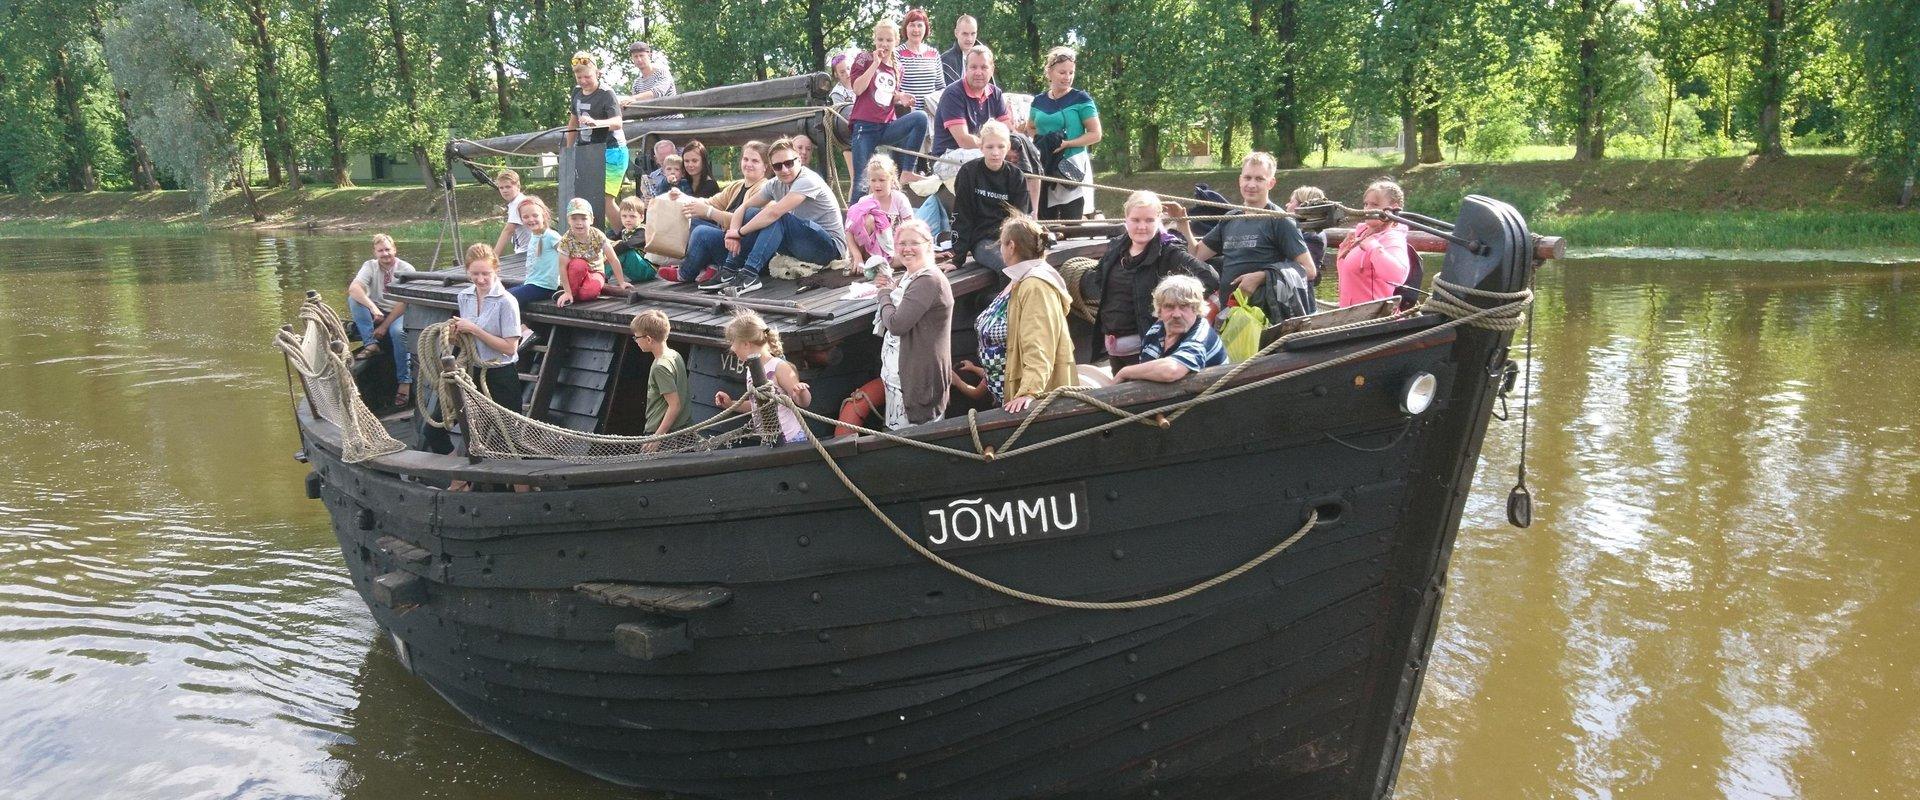 Der Schleppkahn Jõmmu ist ein Handelssegler - ähnliche Schleppkähne waren von der Hansezeit bis zur Mitte des 20. Jahrhunderts auf den Gewässern unter